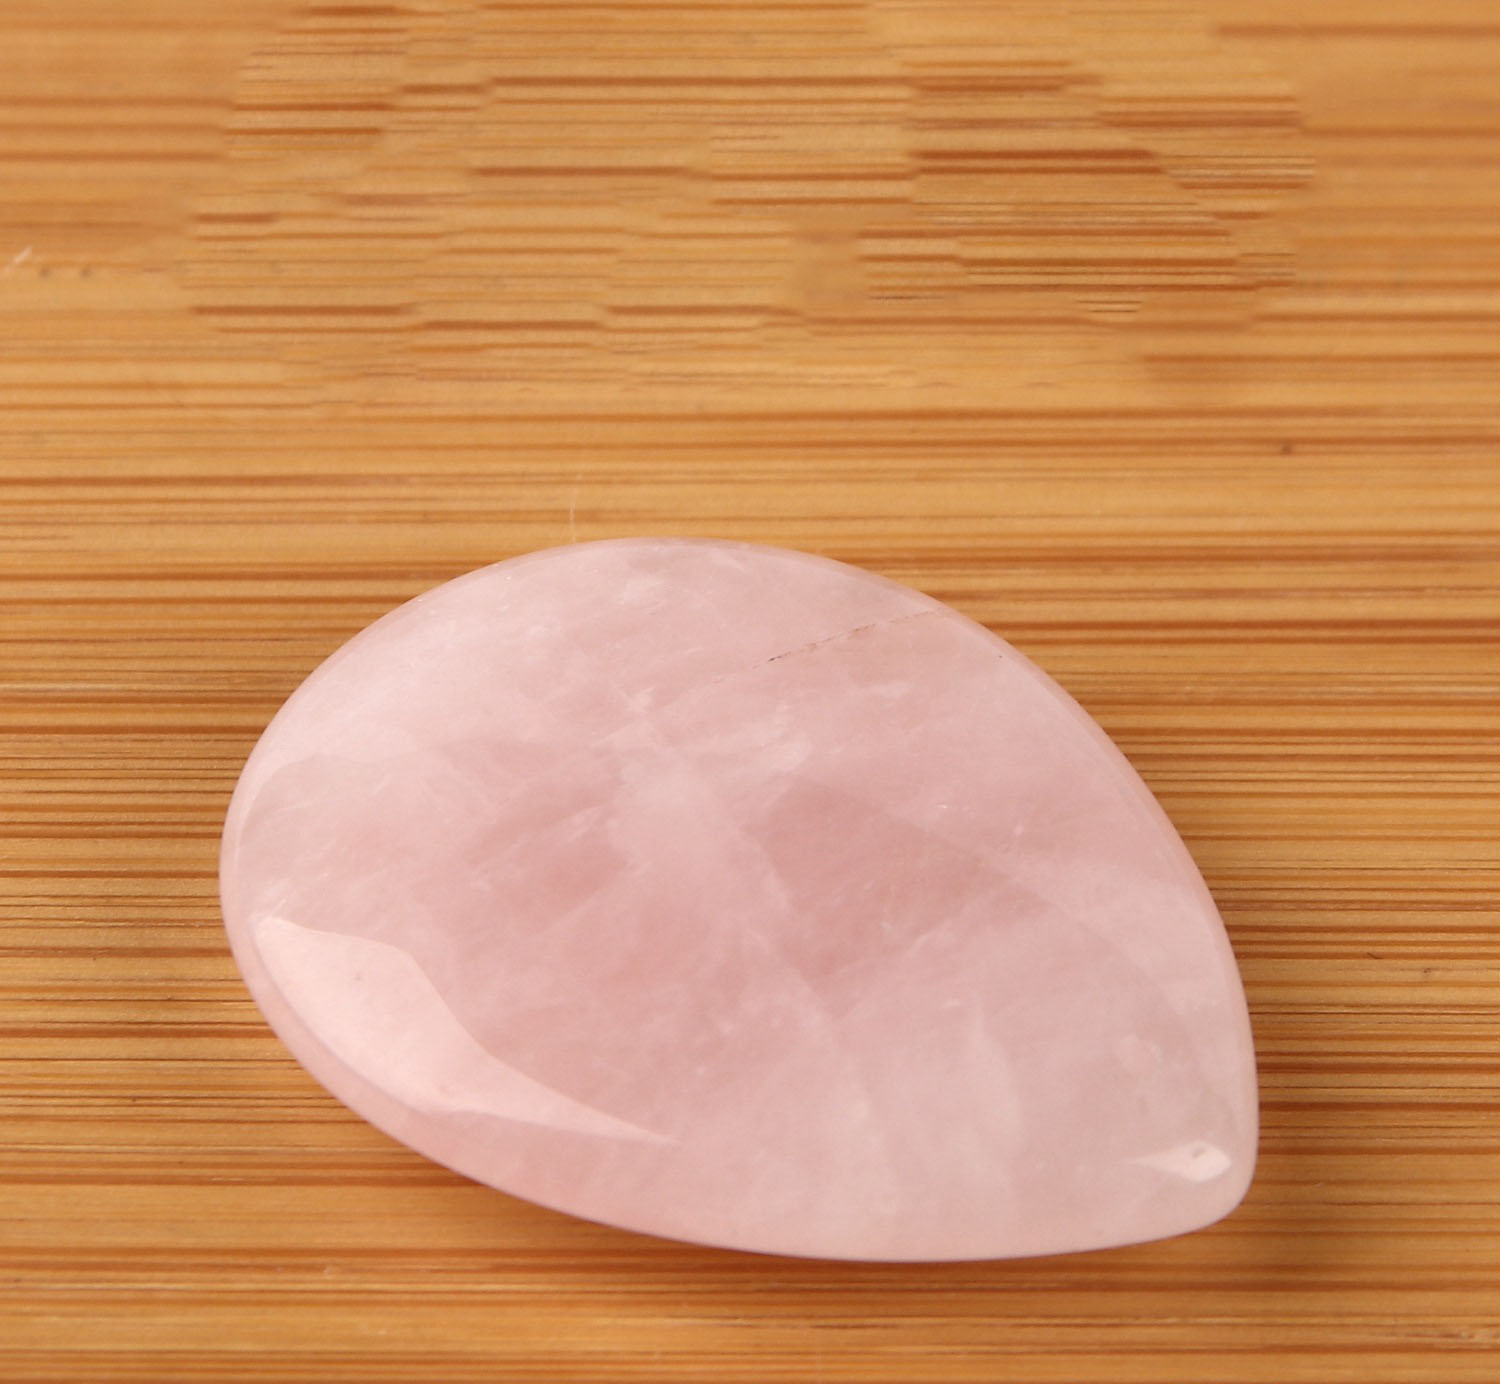 natural pink crystal